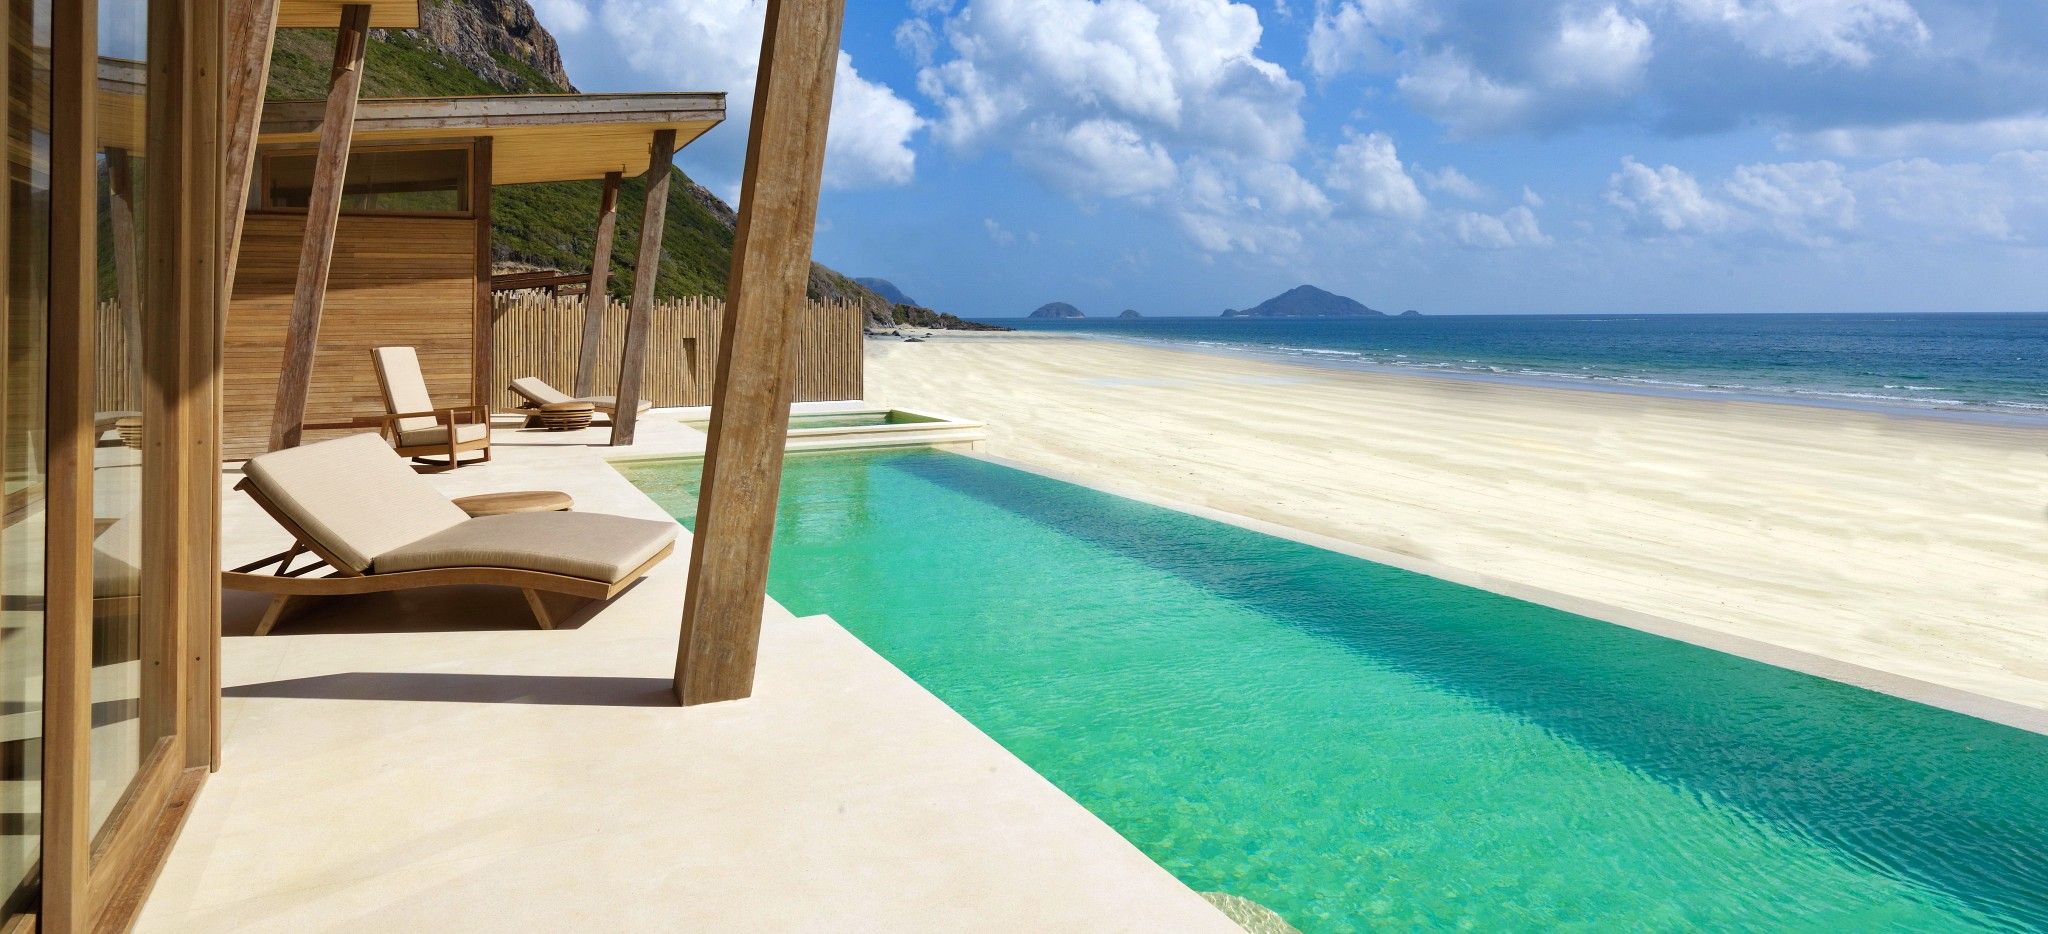 Die Terrasse einer Villa mit einem langem privaten Pool direkt am Strand